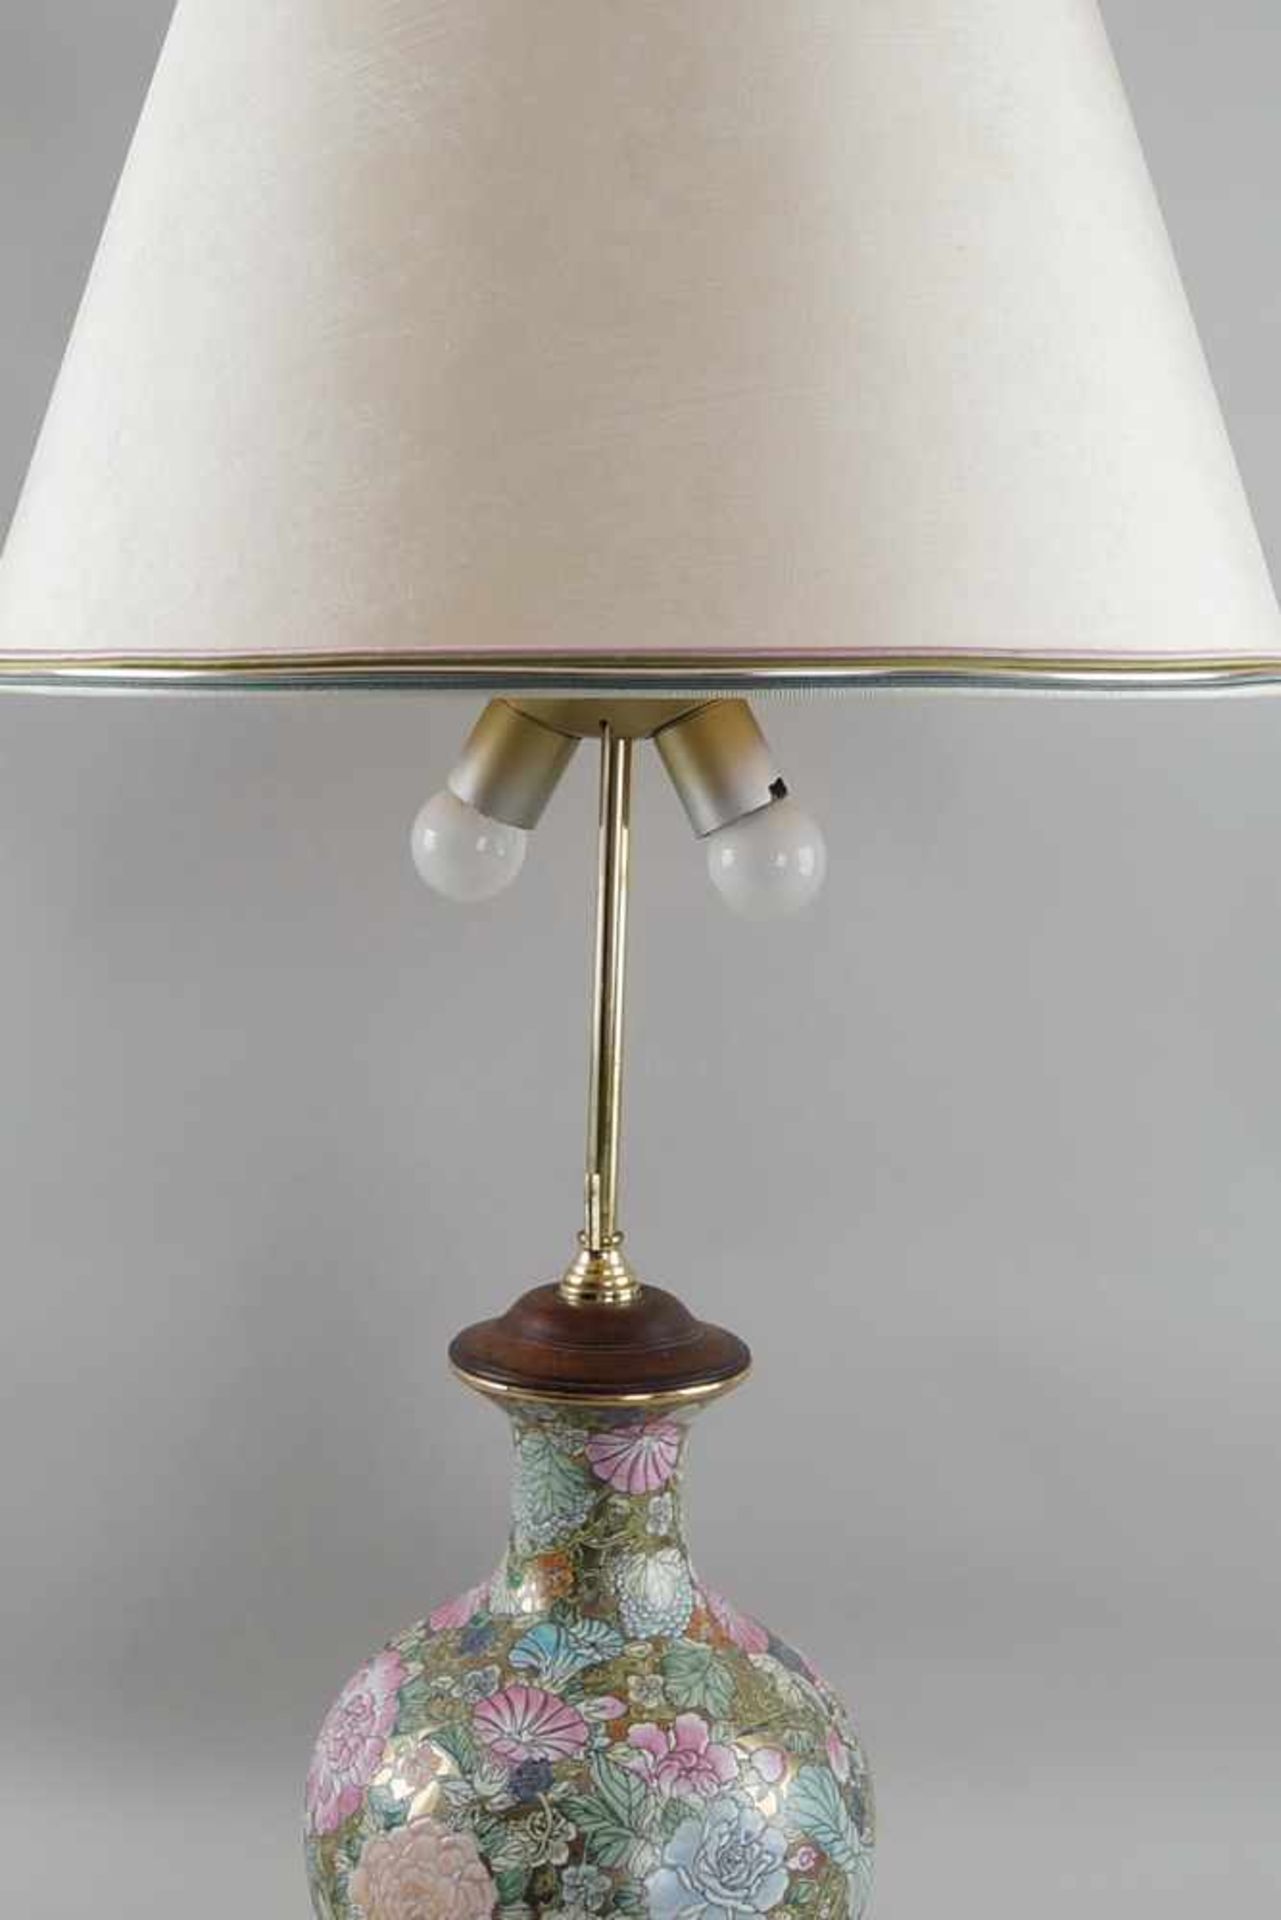 Tischlampe, ehem. asiatische Vase, auf Holzstand, elektrifiziert, mit Schirm, H 90 cm- - -24.00 % - Bild 2 aus 6